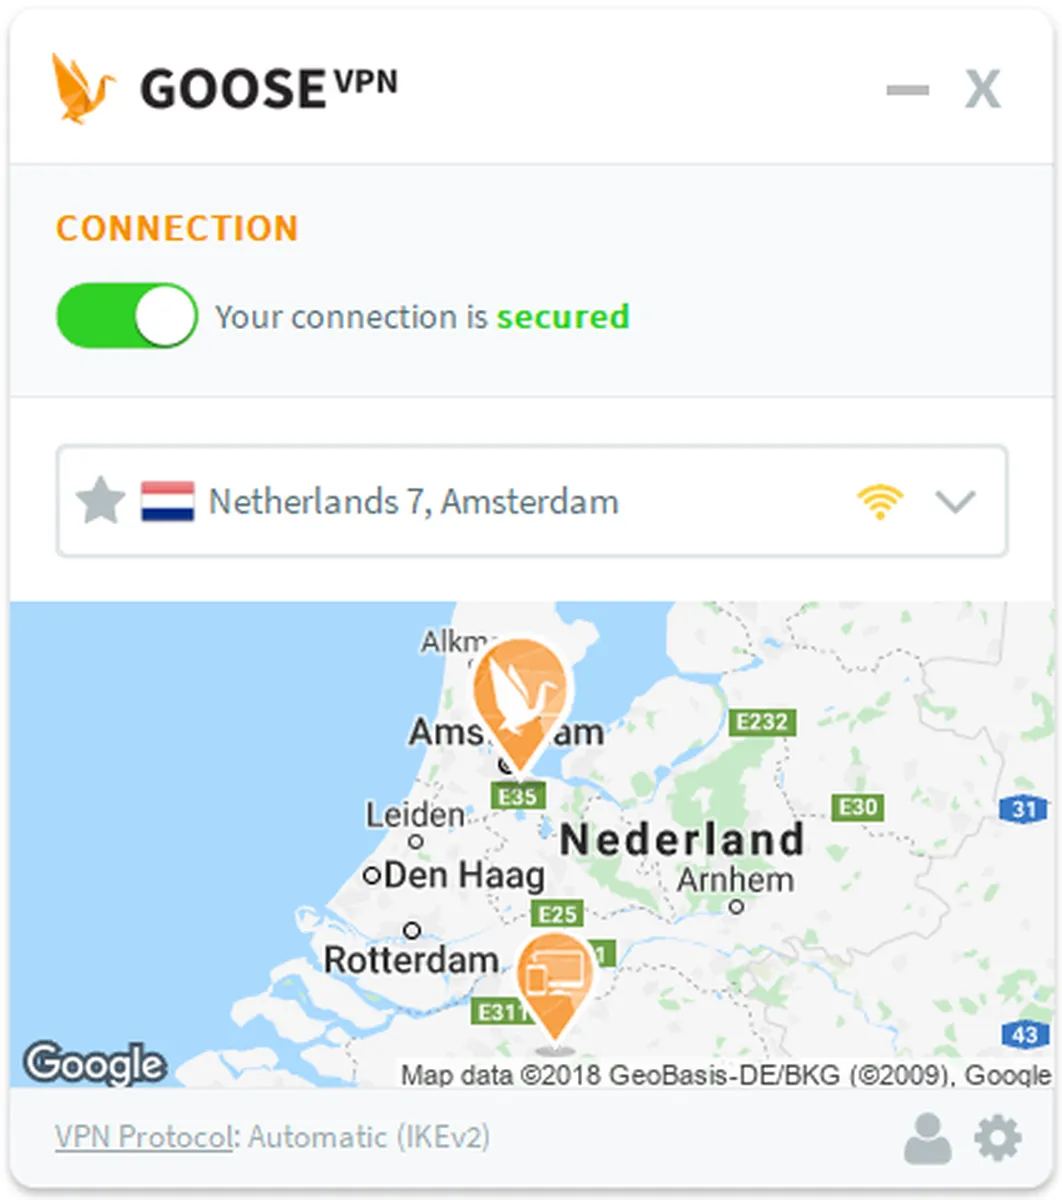 Goose VPN Features